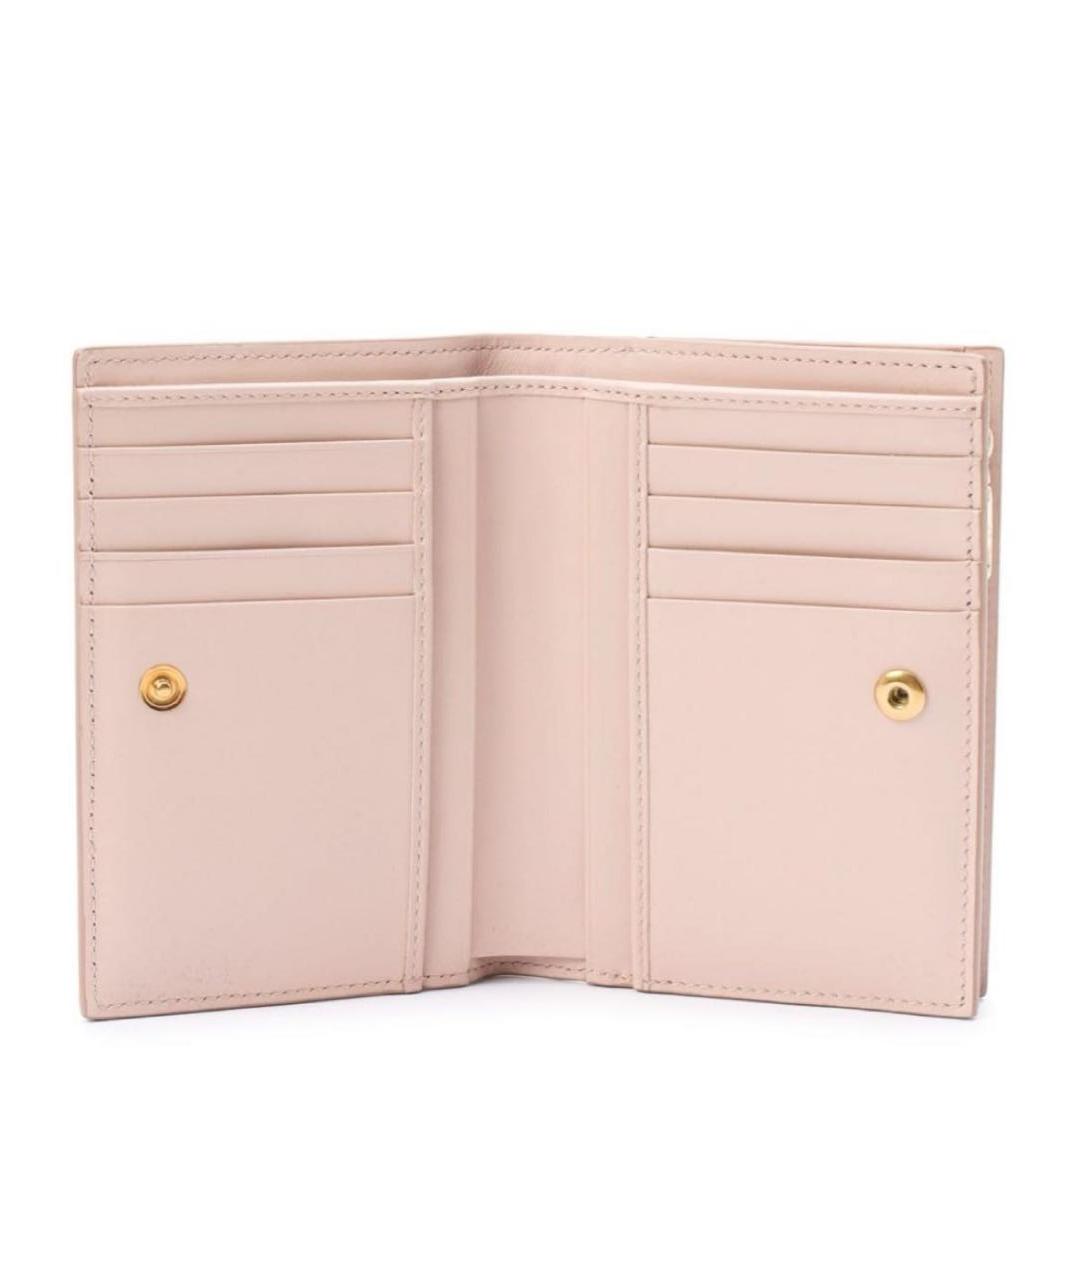 DOLCE&GABBANA Розовый кожаный кошелек, фото 2